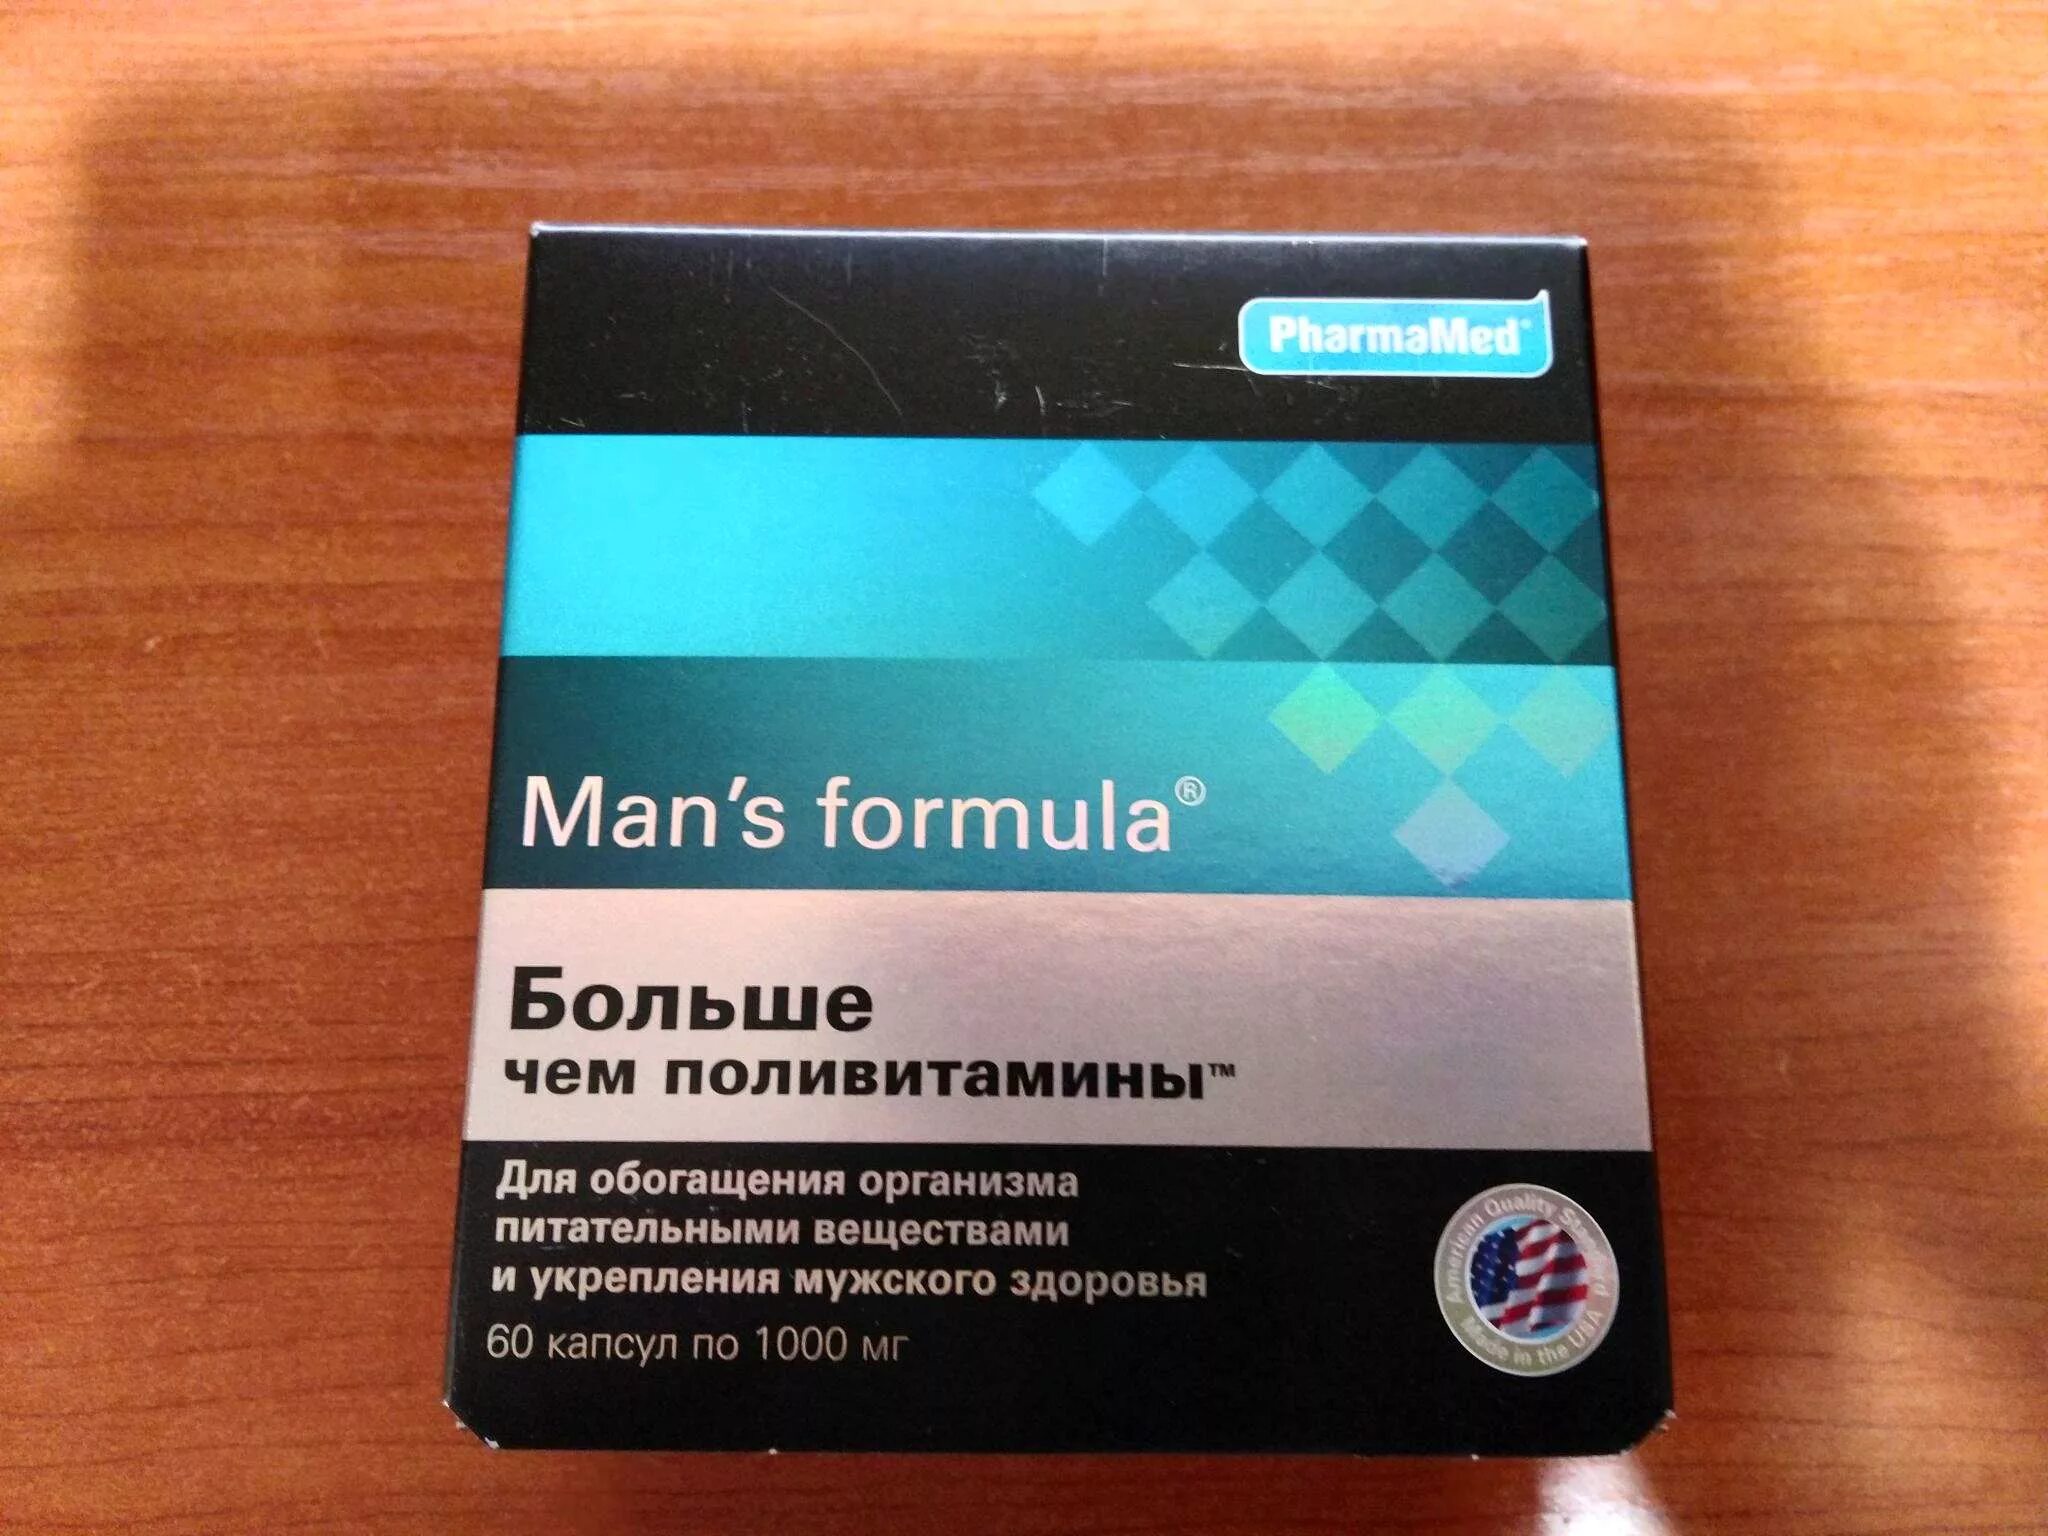 Менс потенциал форте. Formula man's (больше,чем поливитамины капс n60 Вн ). Витамины man's Formula потенциал форте.